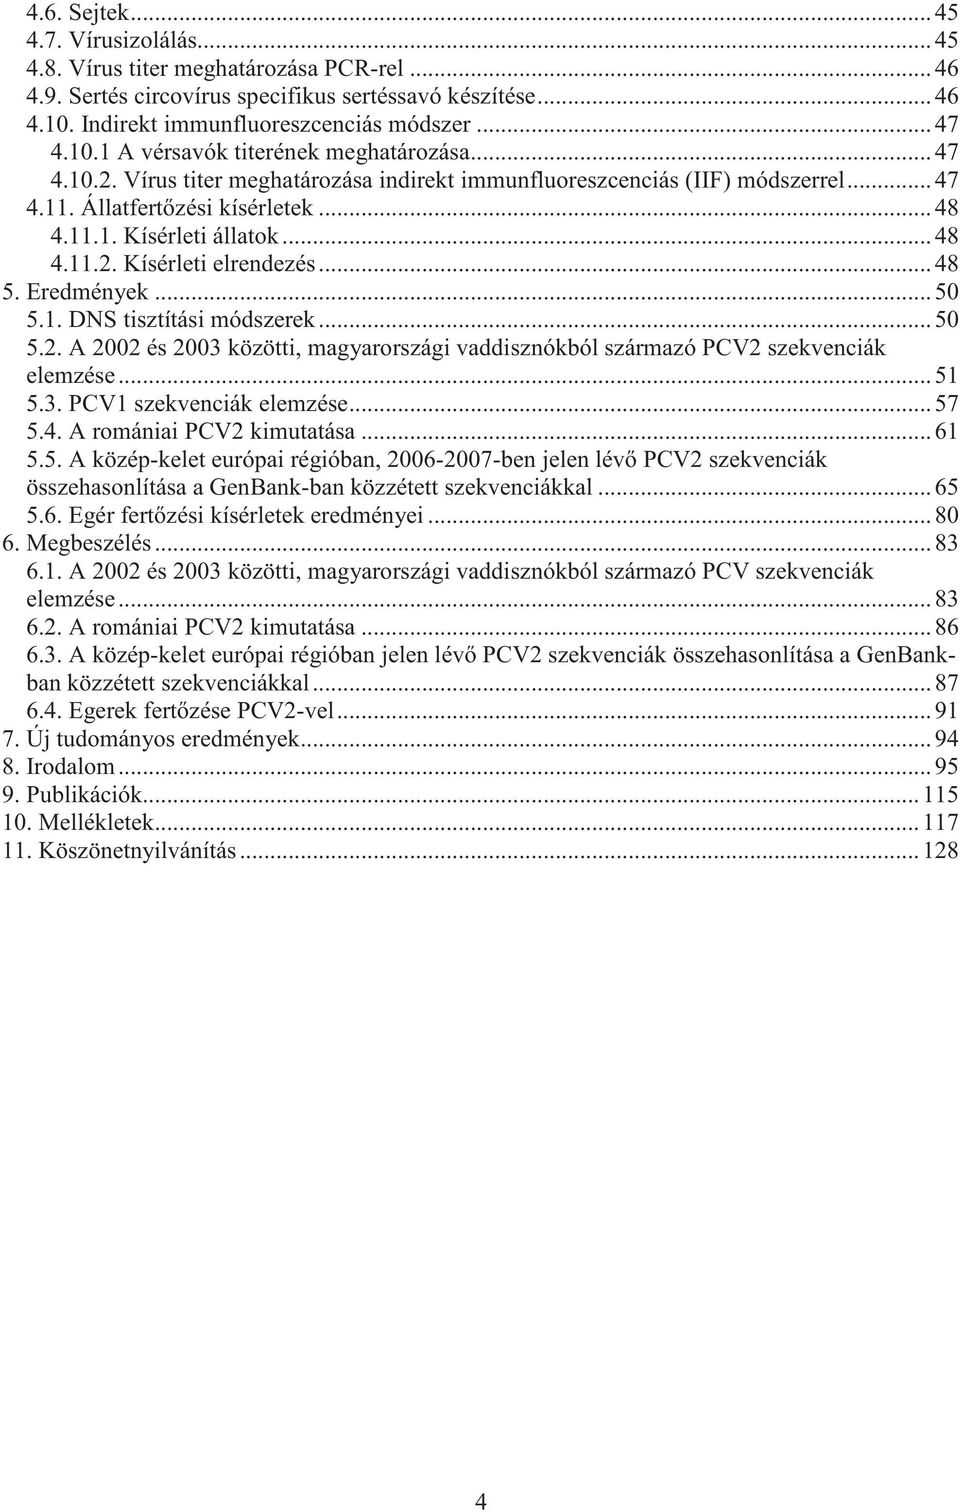 Eredmények...50 5.1. DNS tisztítási módszerek...50 5.2. A 2002 és 2003 közötti, magyarországi vaddisznókból származó PCV2 szekvenciák elemzése...51 5.3. PCV1 szekvenciák elemzése...57 5.4.